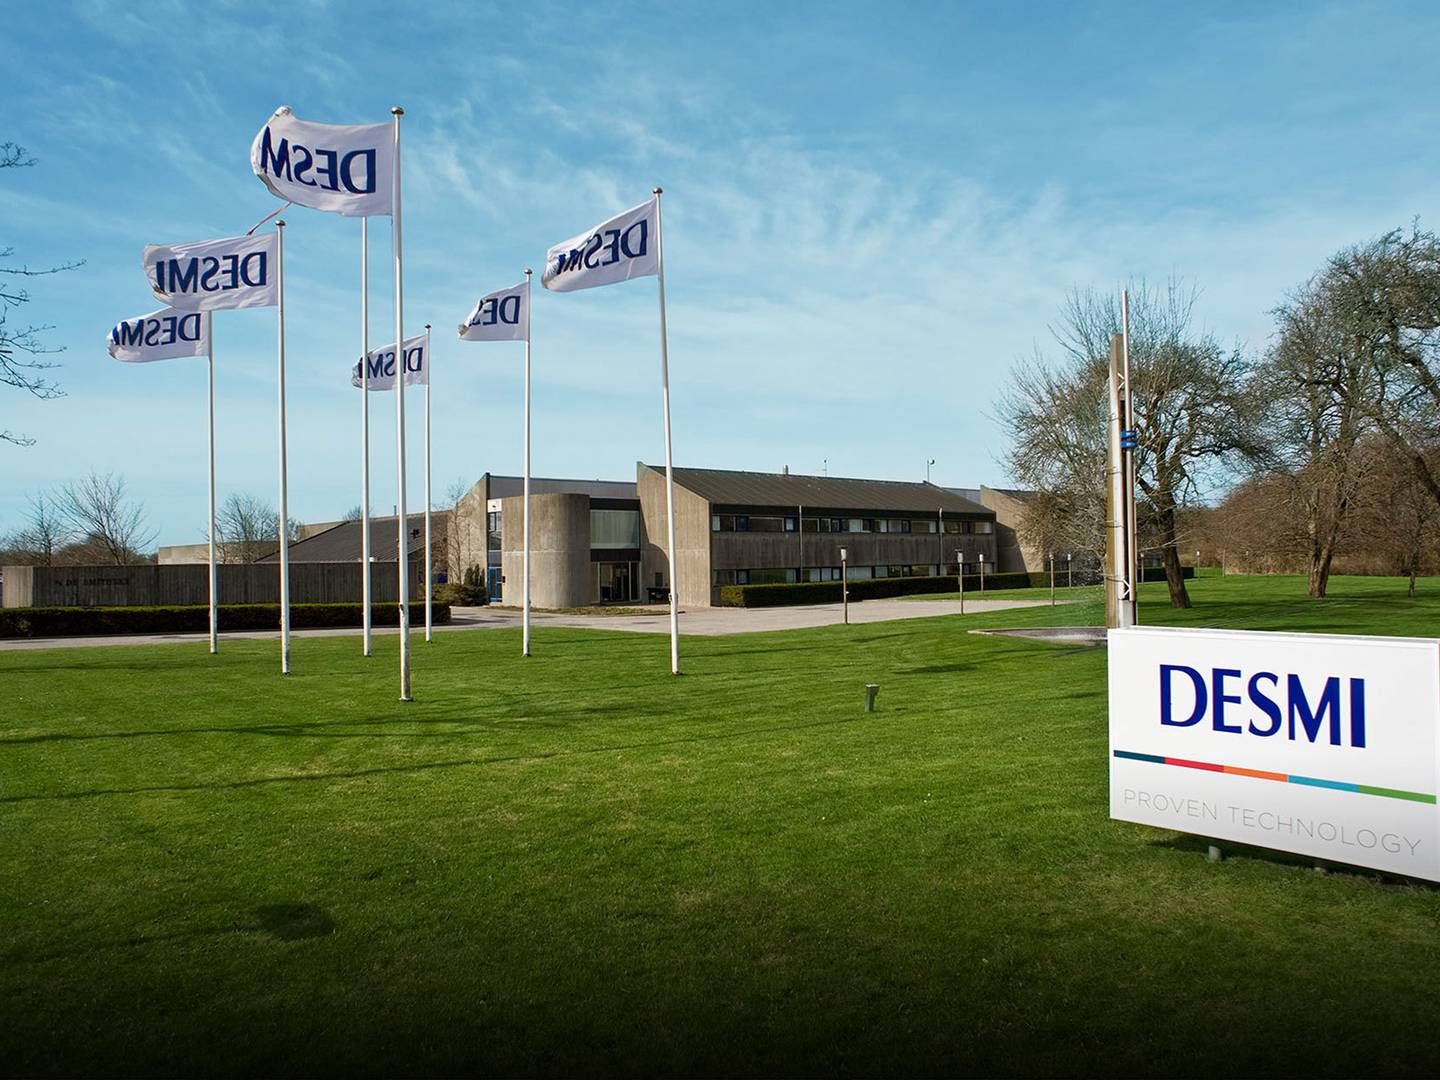 Desmi-konceren har knap 1.000 ansatte på verdensplan og hovedkontor i Nørresundby i Nordjylland.